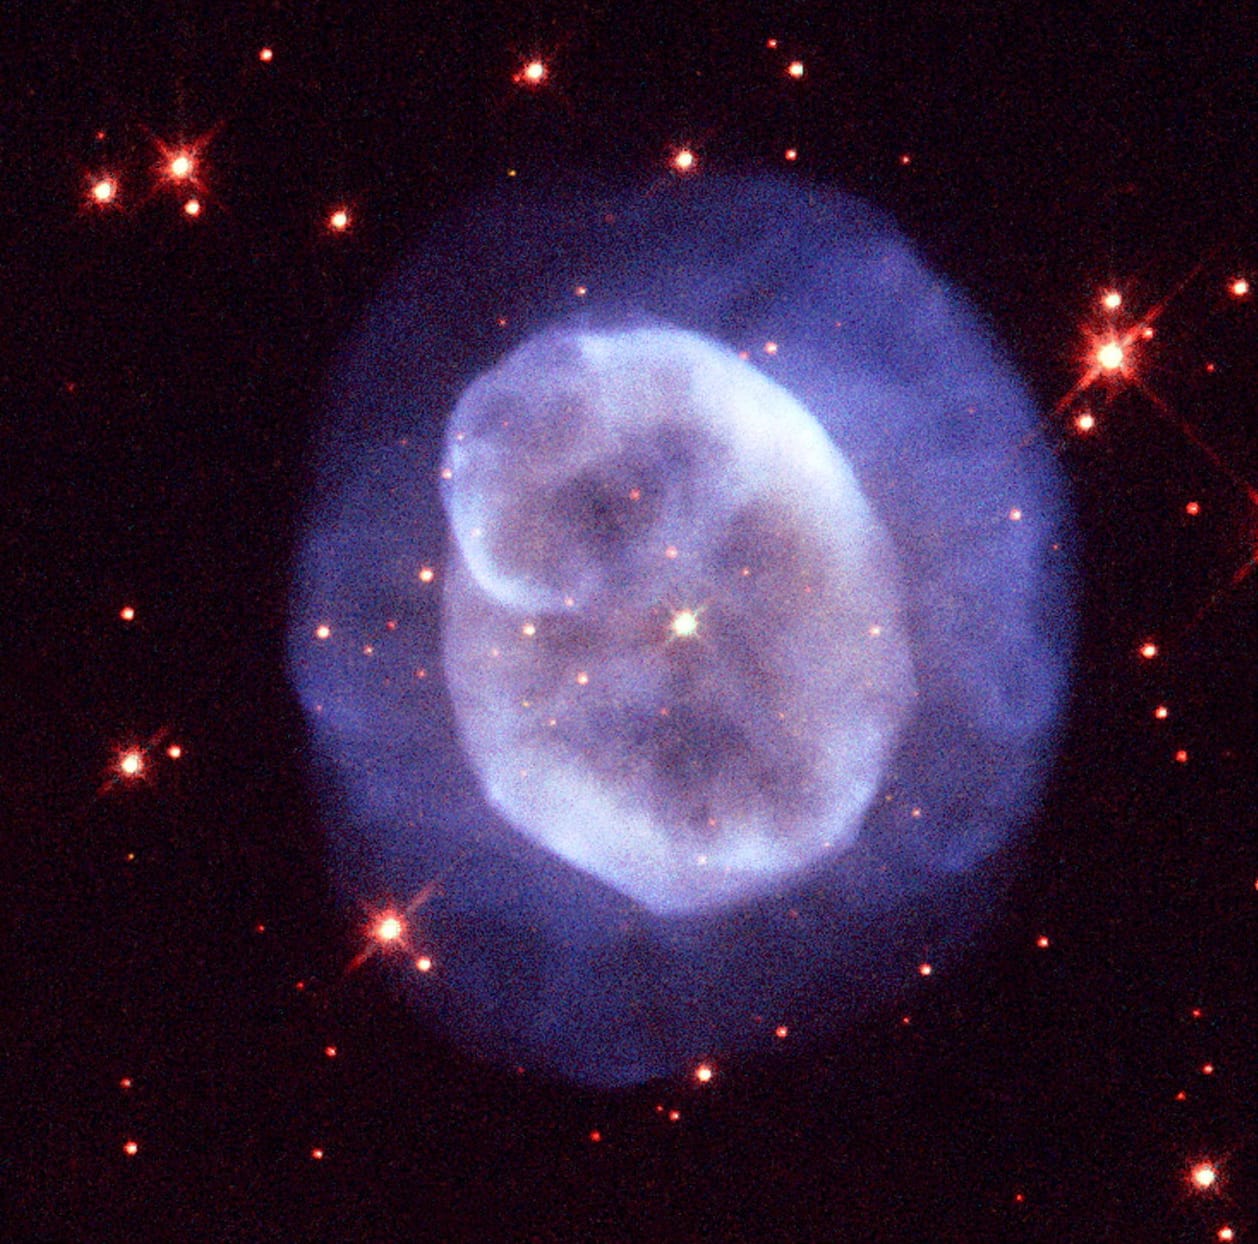 Der planetarische Nebel NGC 5979 zeigt eine rundliche Struktur, die von einer hellen inneren und einer schwächeren äußeren Zone geprägt ist